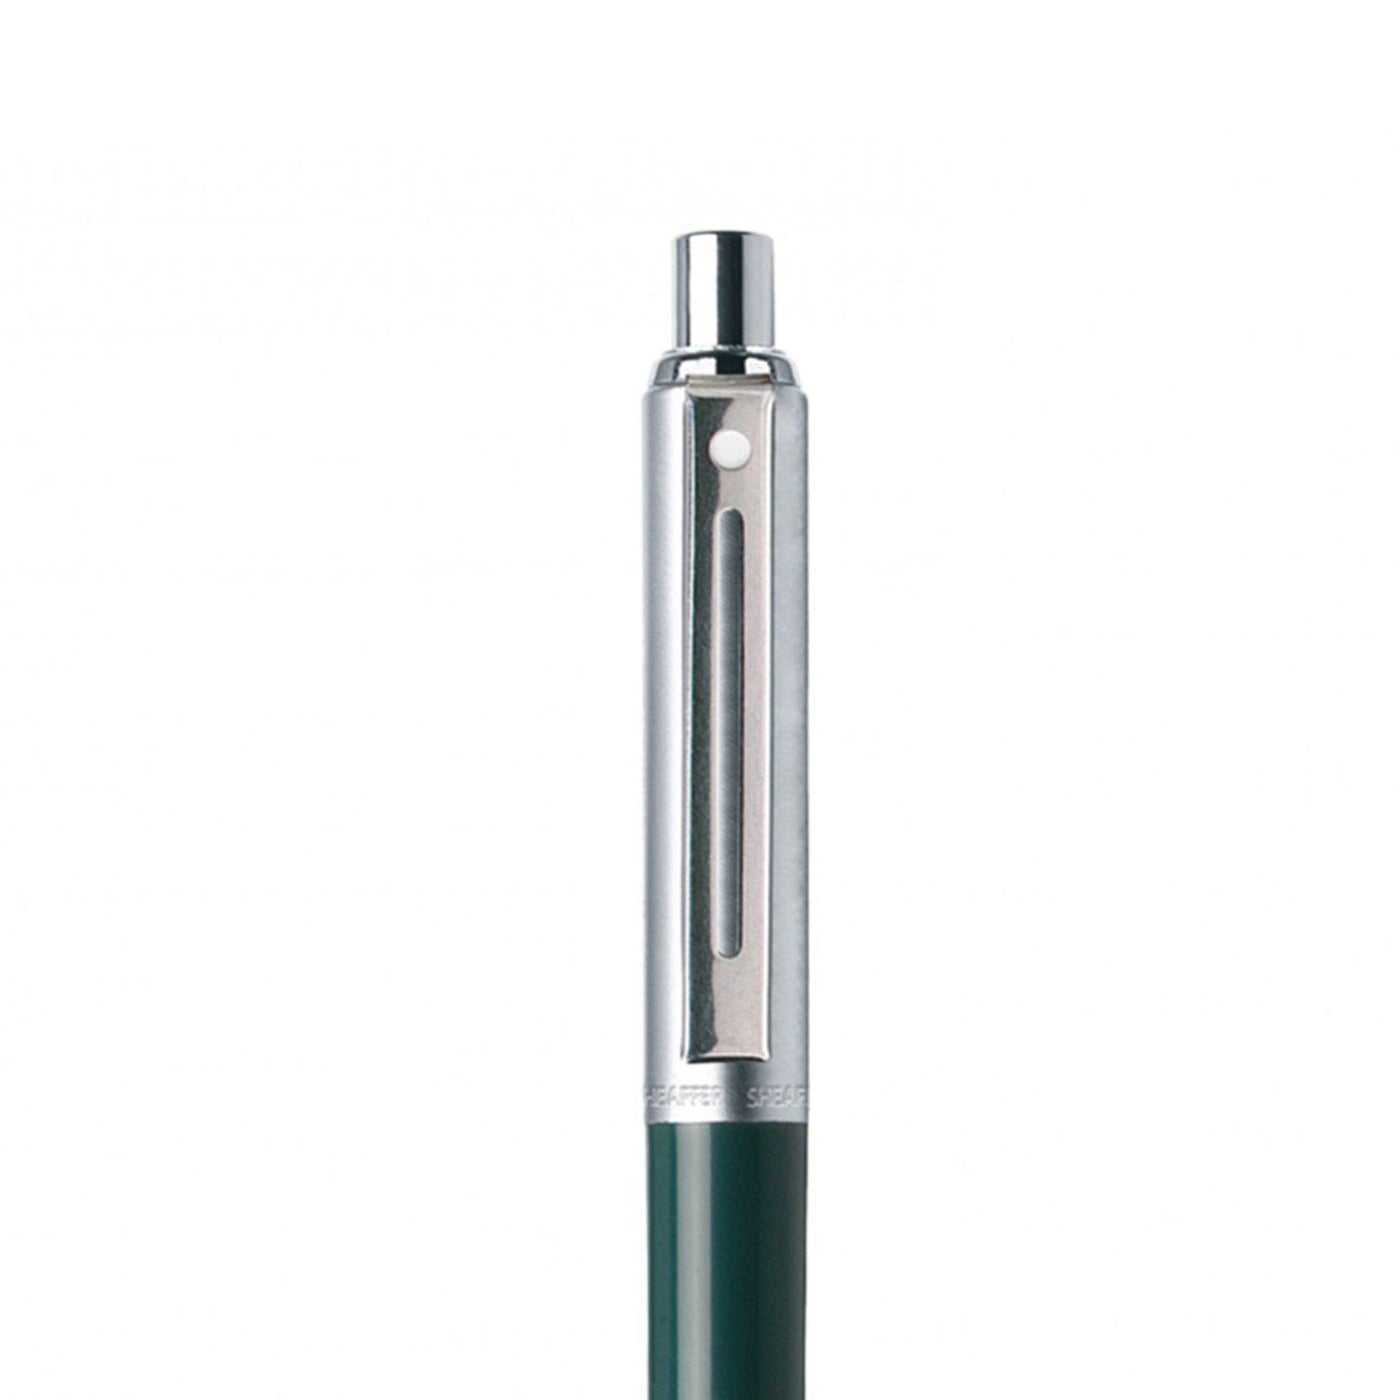 Sheaffer Sentinel Ball Pen - Green & Brushed Chrome 3